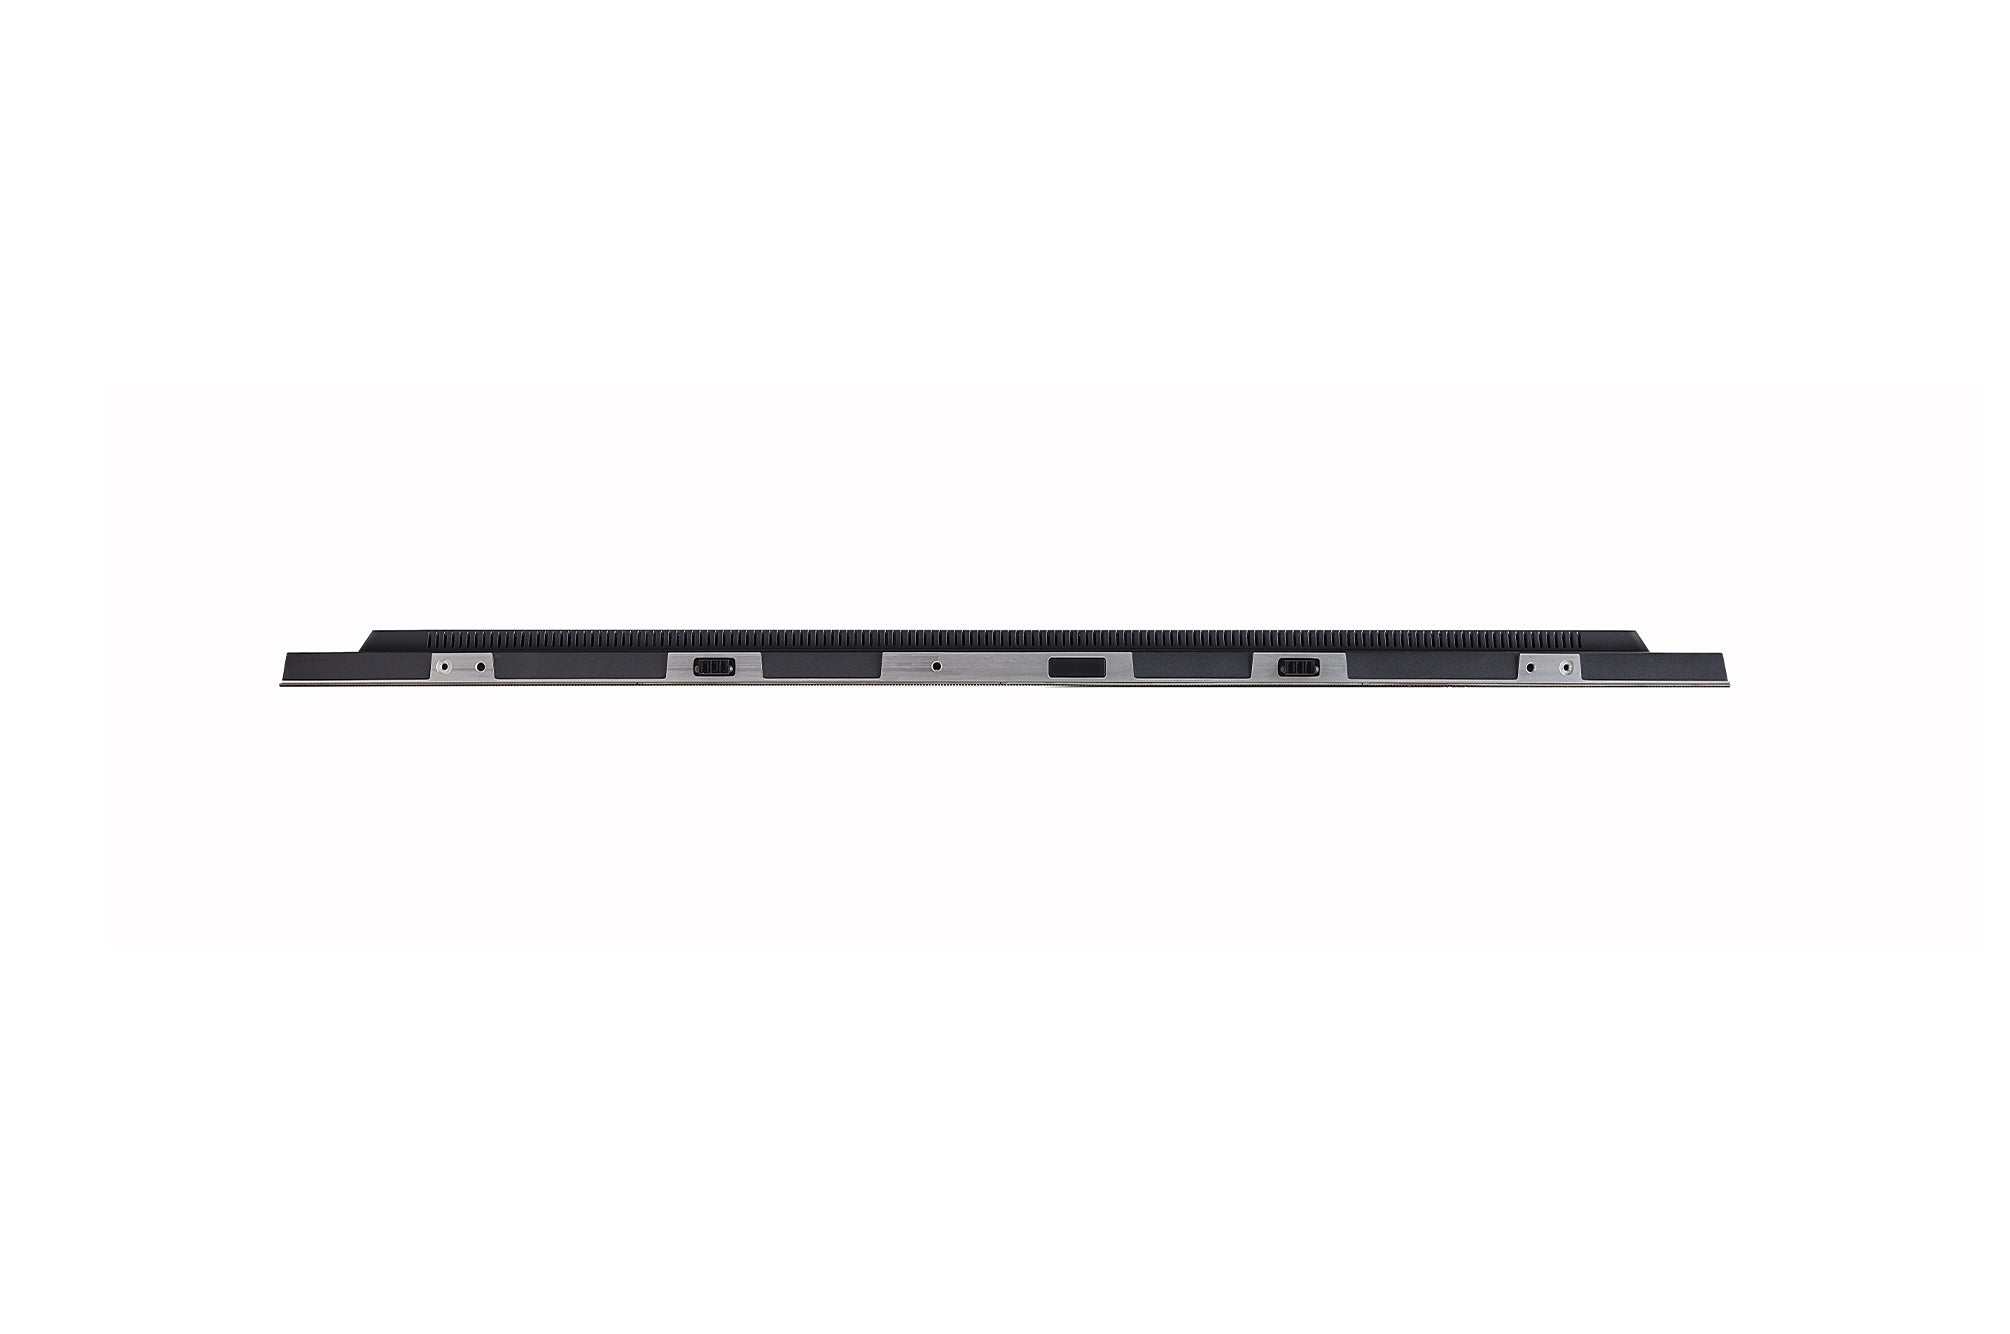 LG LSAC025 Monitor de video PANEL LED 54" Pitch de 2.5mm. sin bisel para aplicaciones de Videowall. Resolución de hasta UHD con una relación de 16:9.